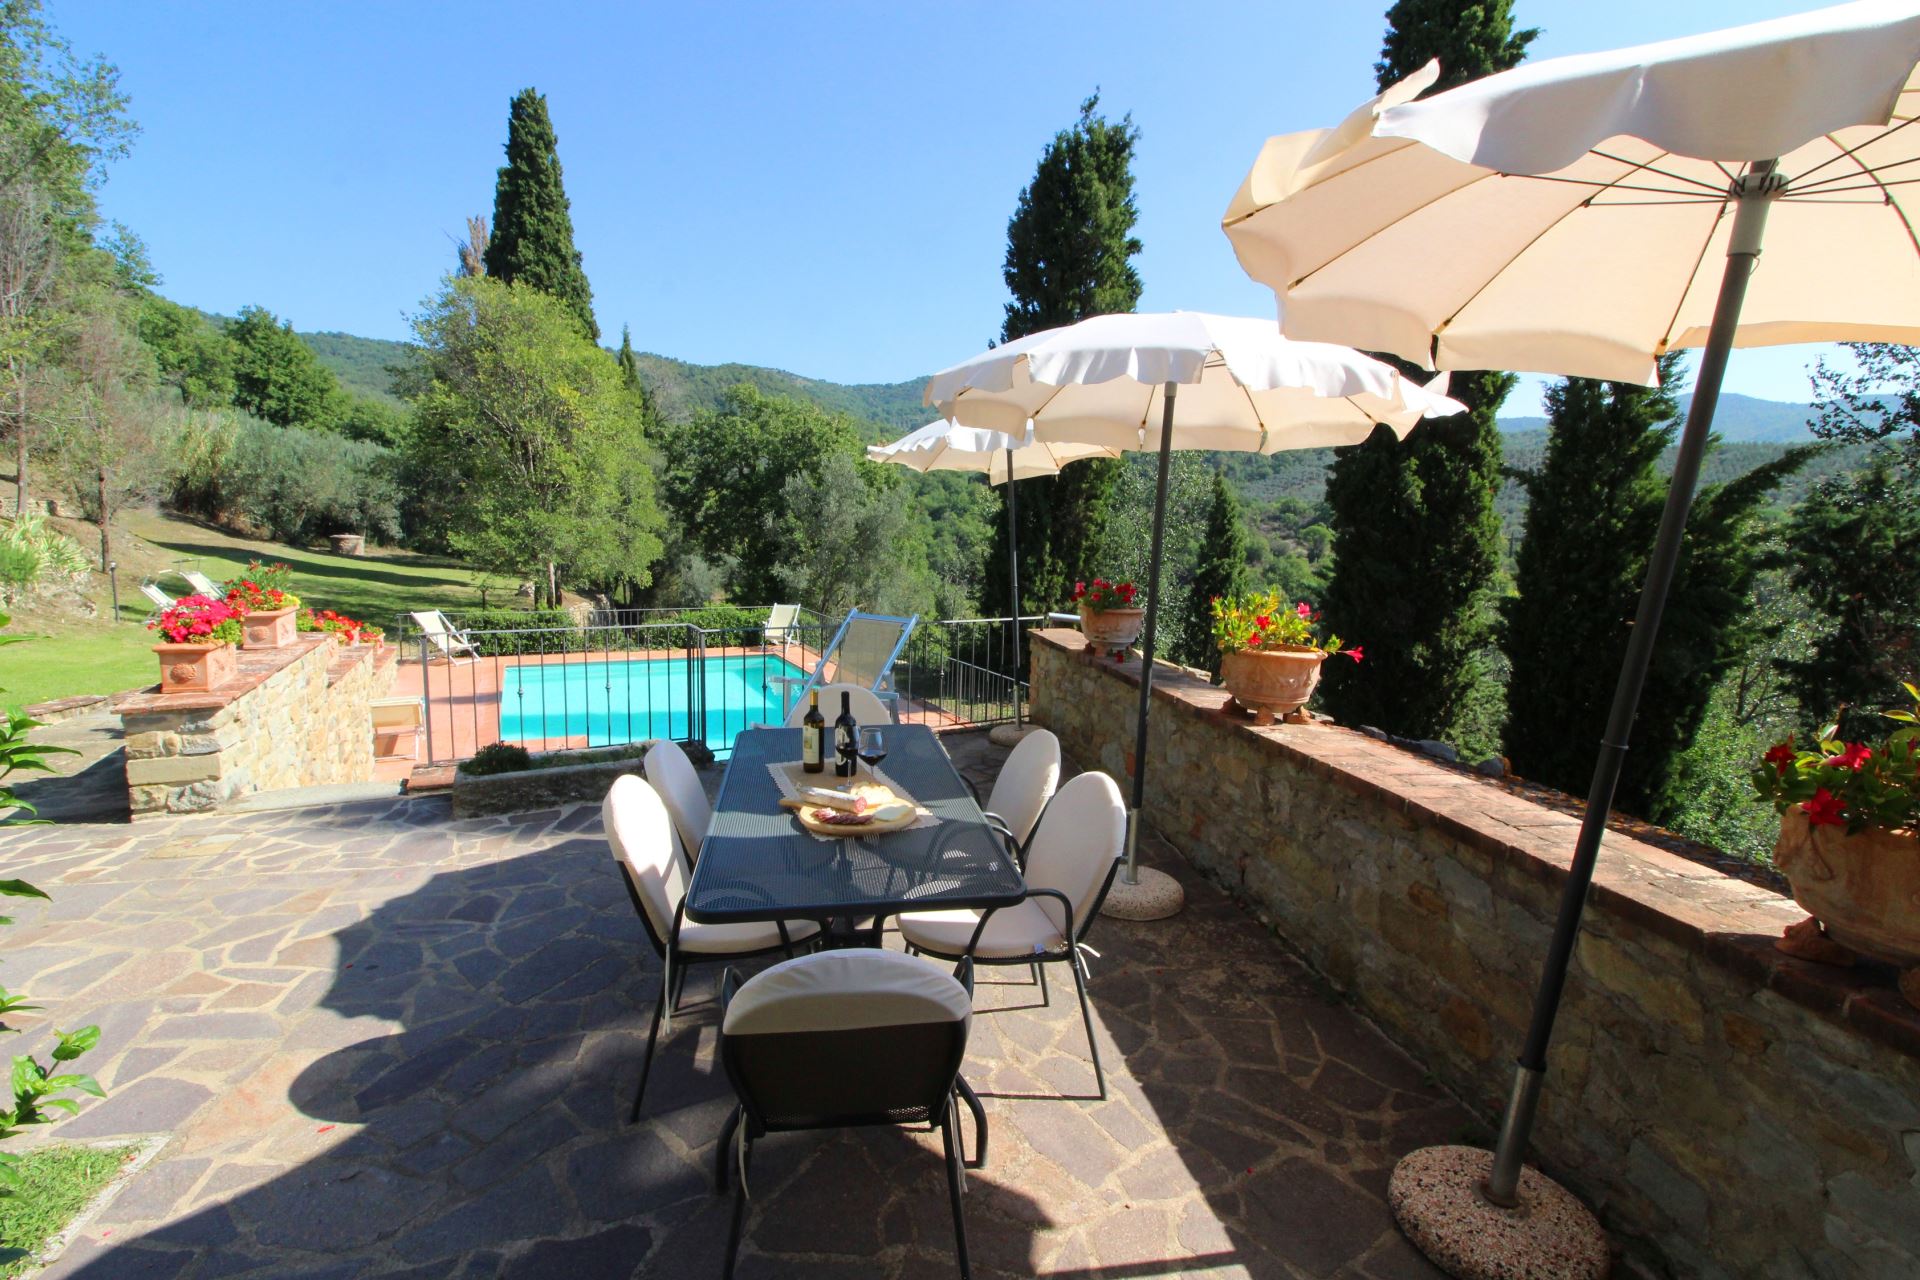 434_d7efbfa_Kindvriendelijk vakantiehuis met privé zwembad, Borgo Caprile, Toscane, Cortona, Arezzo, (34).